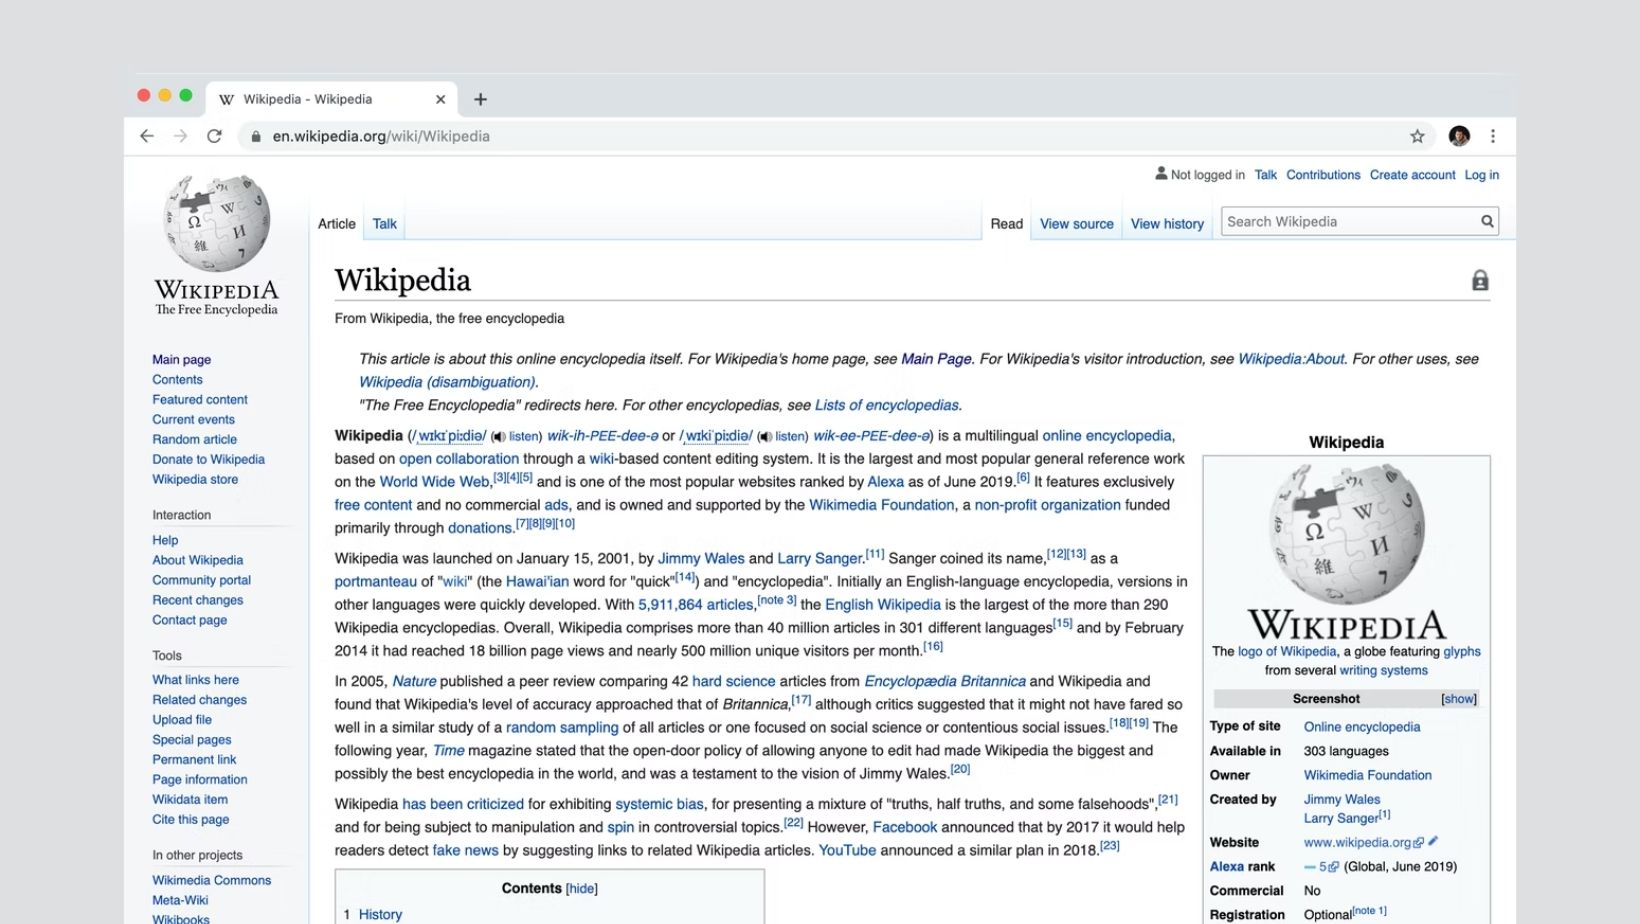 Wikipedia page